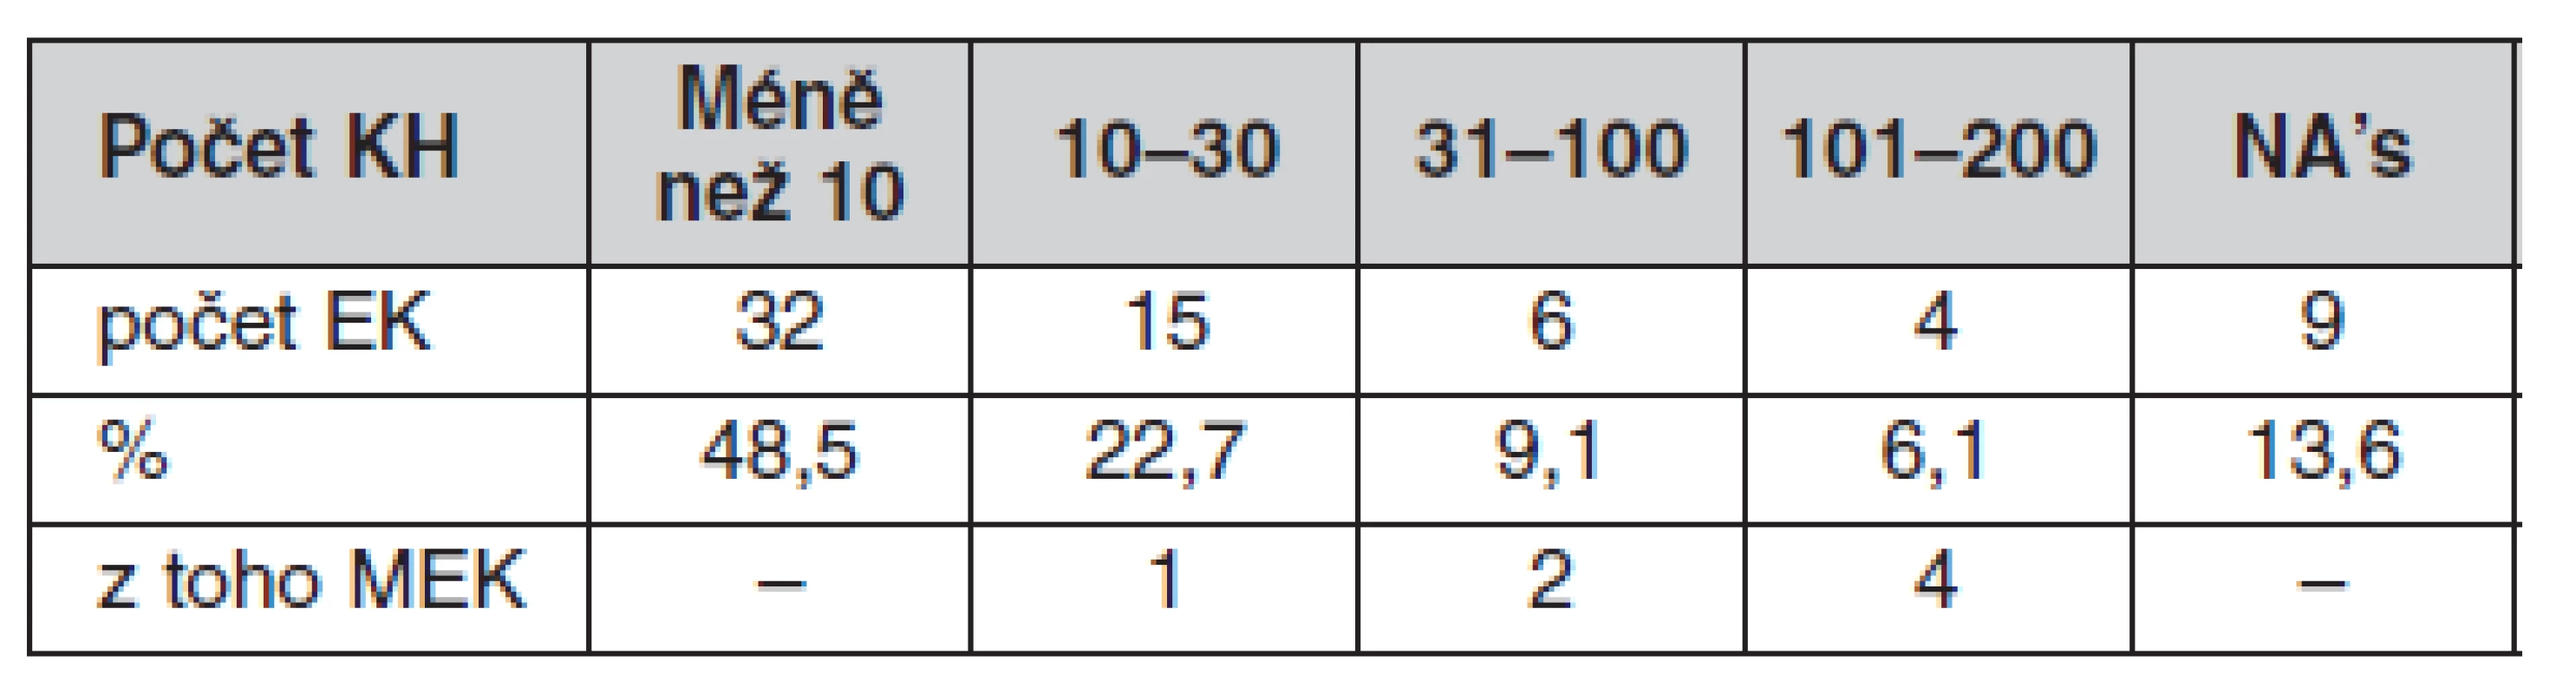 Počty klinických hodnocení posouzených jednotlivými EK za rok 2008